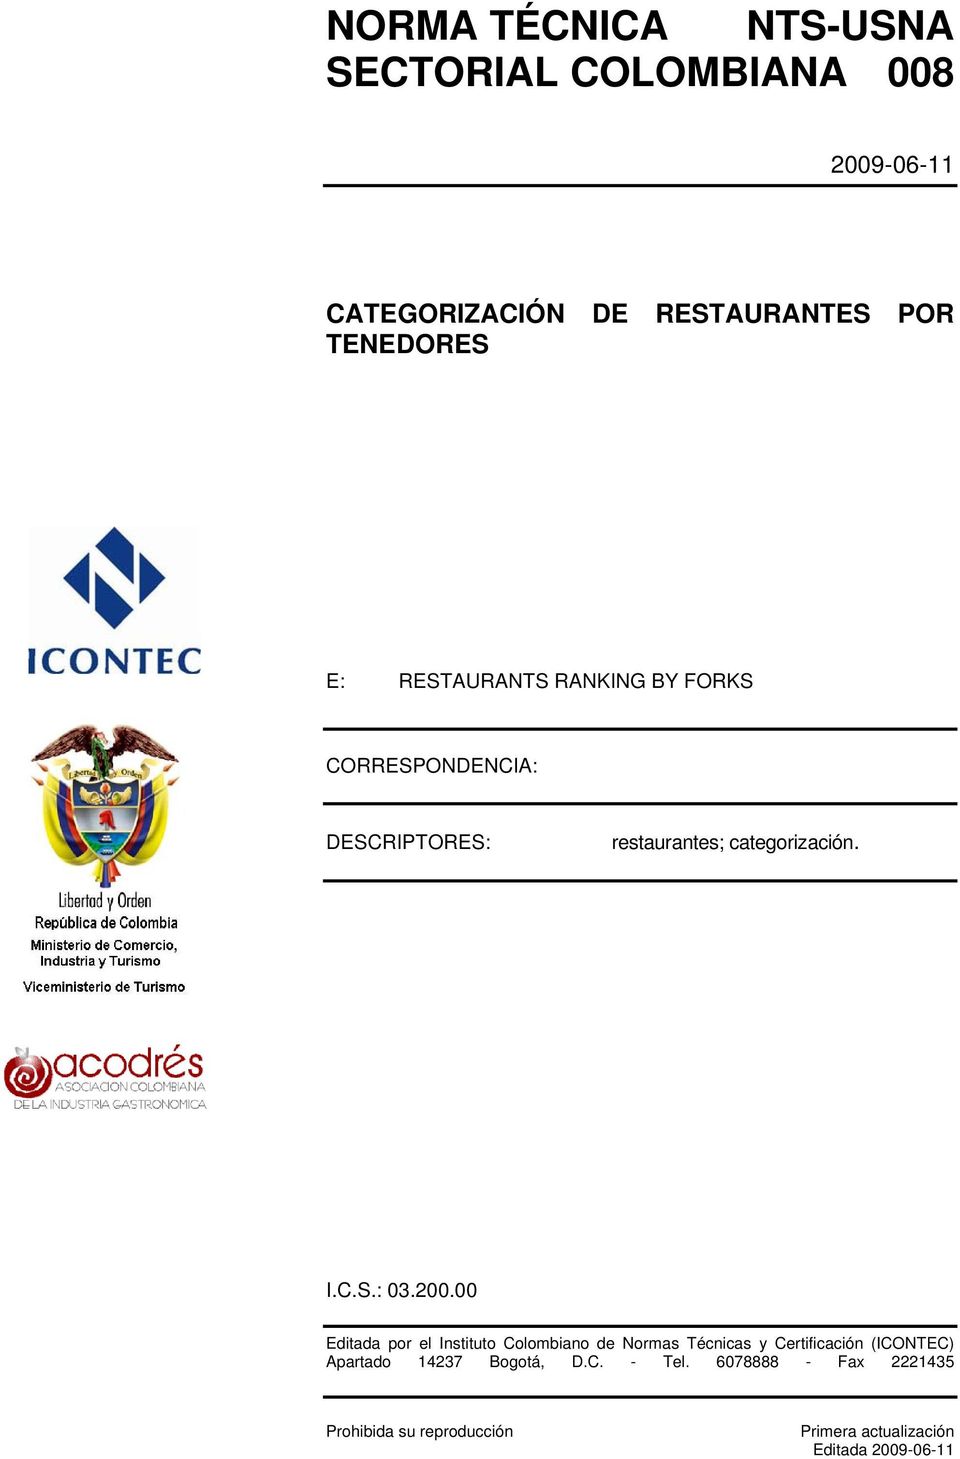 200.00 Editada por el Instituto Colombiano de Normas Técnicas y Certificación (ICONTEC) Apartado 14237